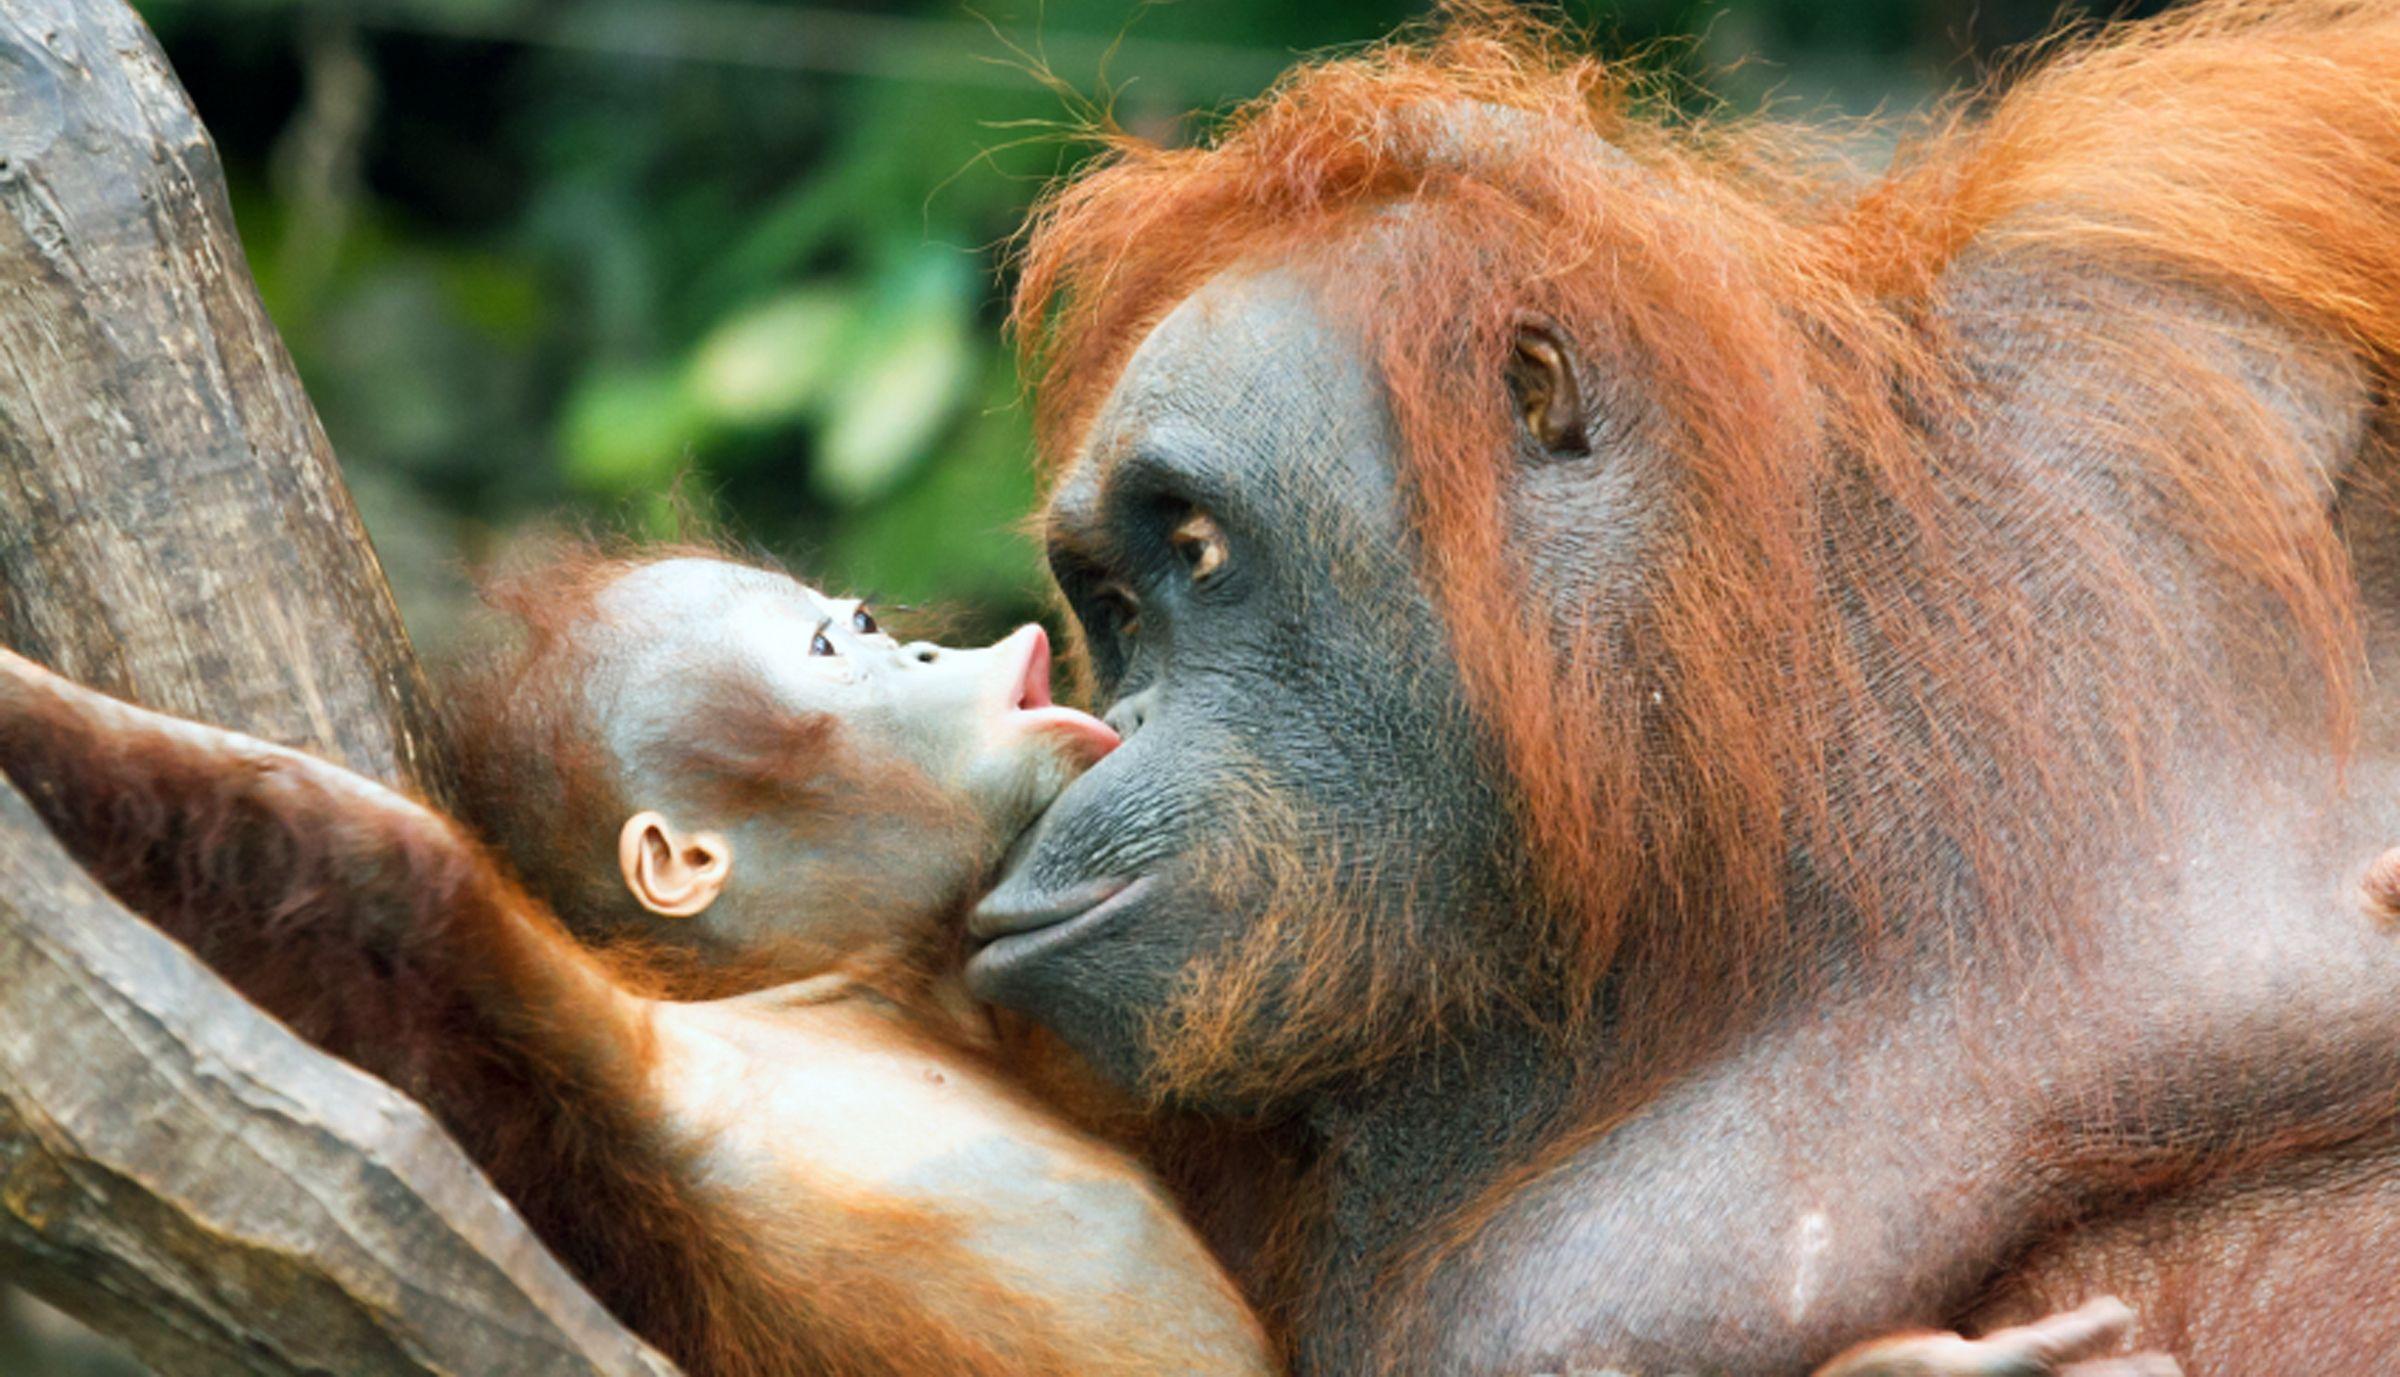 Baby Orangutan 2K Picture 2K Desk 4K Wallpaper, Instagram photo